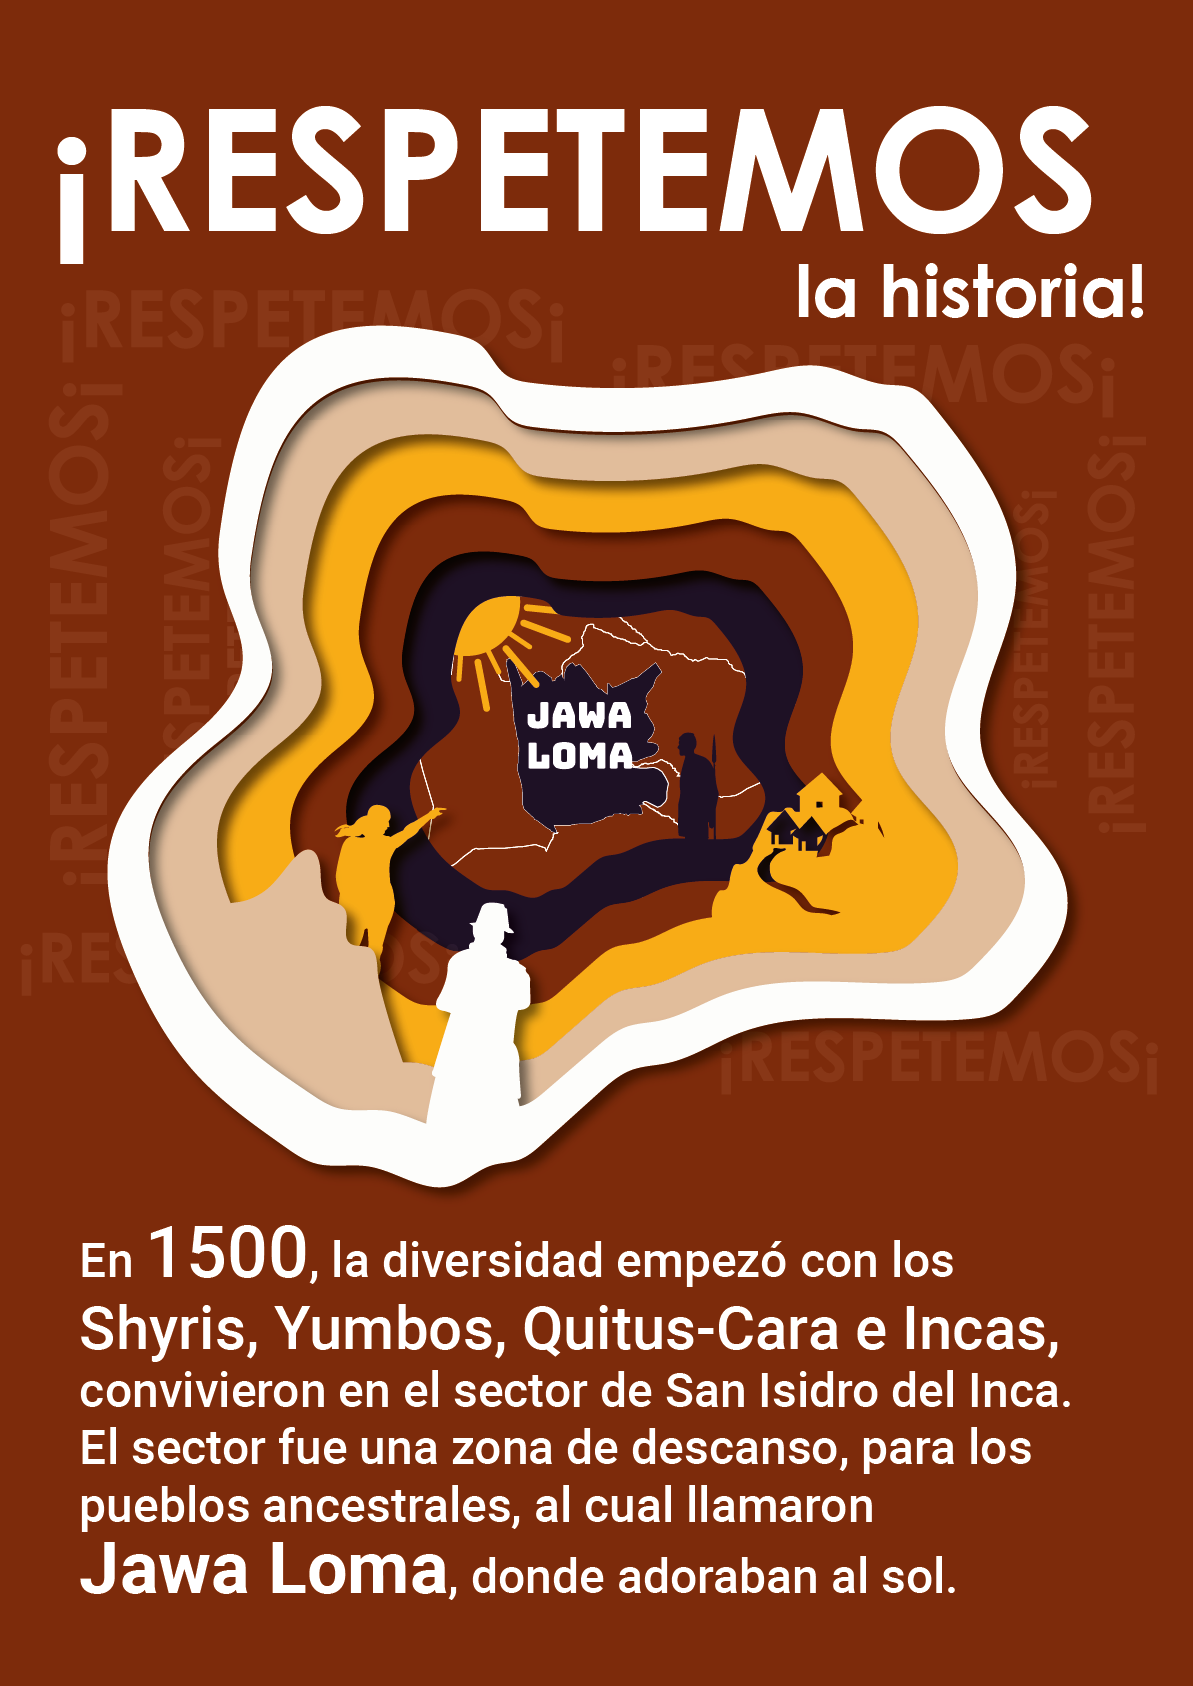 Diversity ETNICO etnic inca equidad papercut paperart cartel Barrios quito ecuador